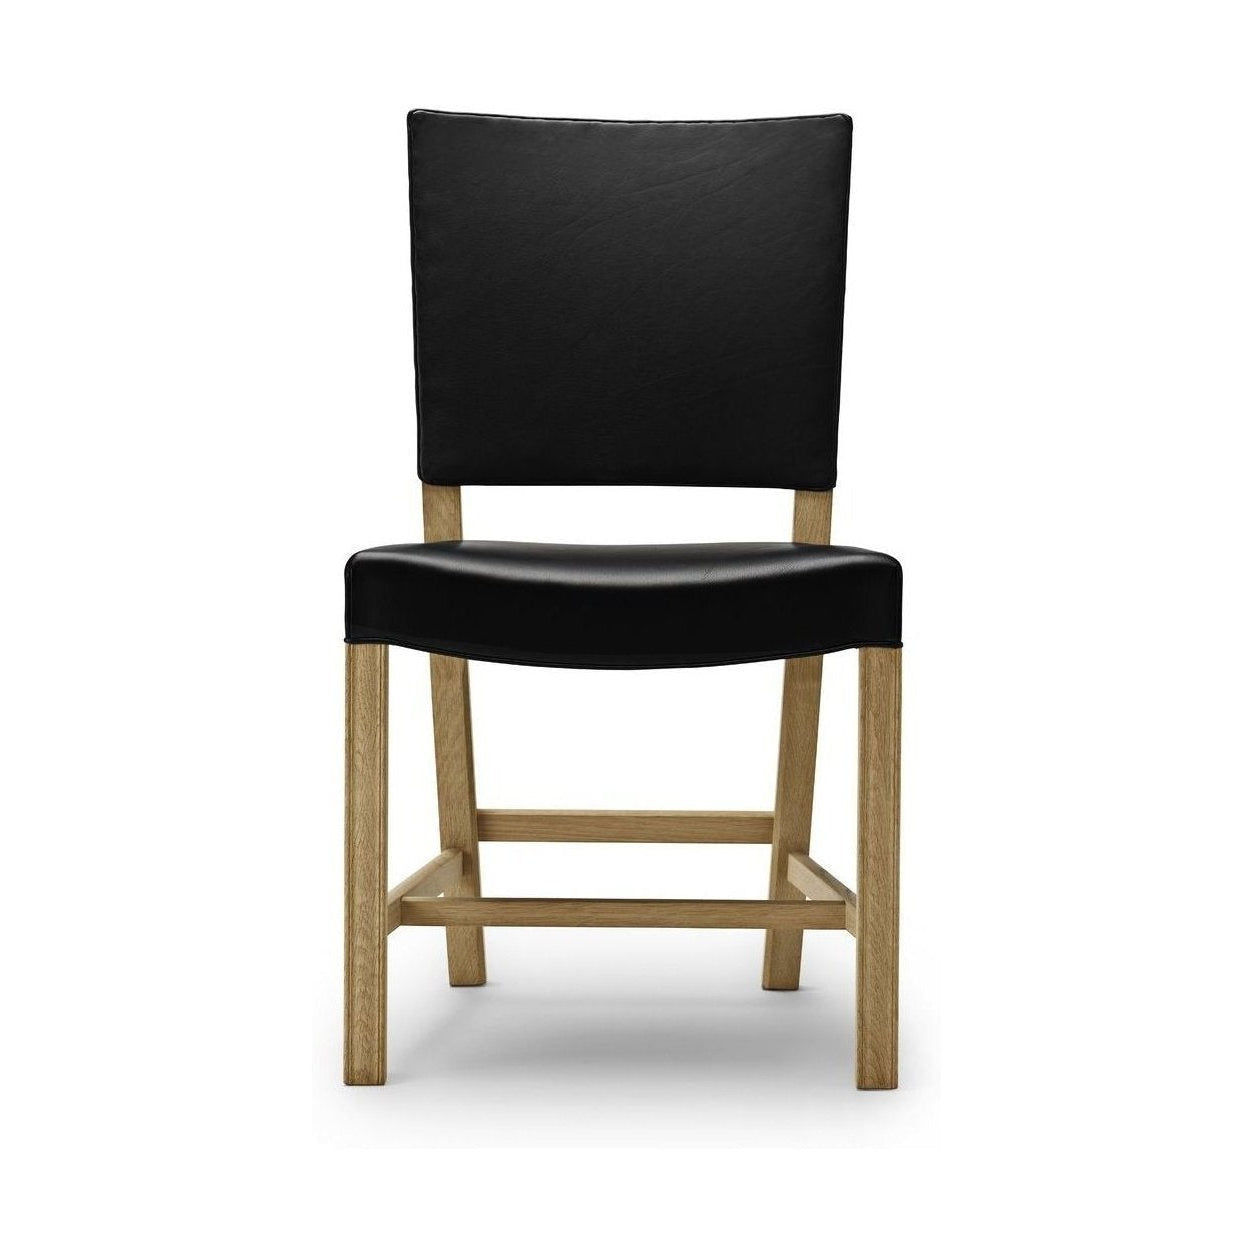 Carl Hansen KK37580 Grande chaise rouge, chêne savonned / cuir noir